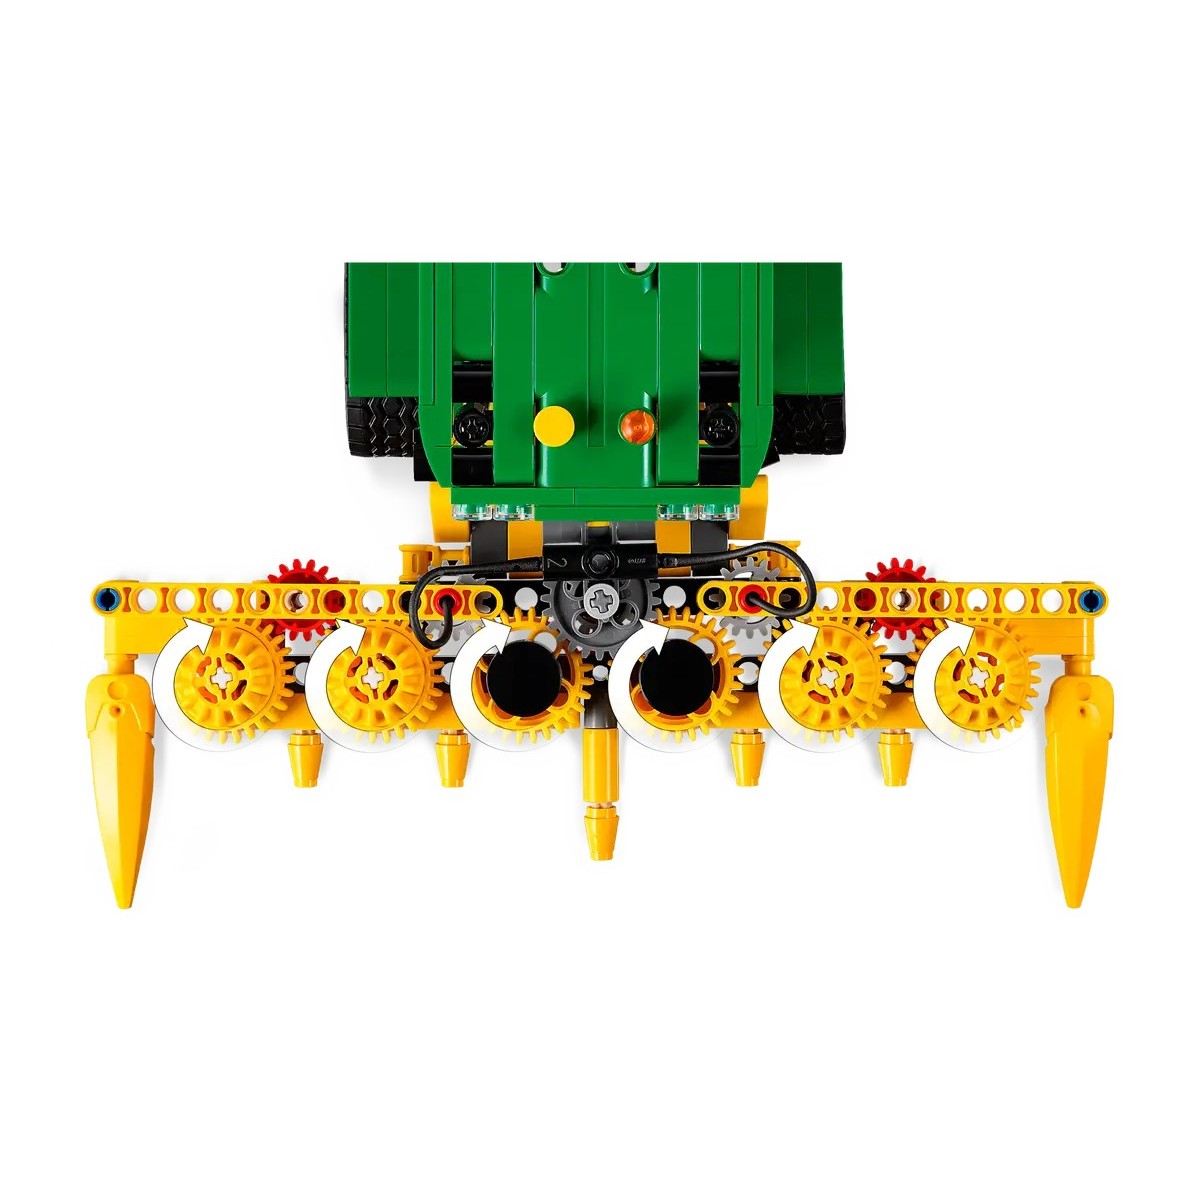 LEGO TECHNIC JOHN DEERE 9700 FORAGE HARVESTER /42168/ posledný kus